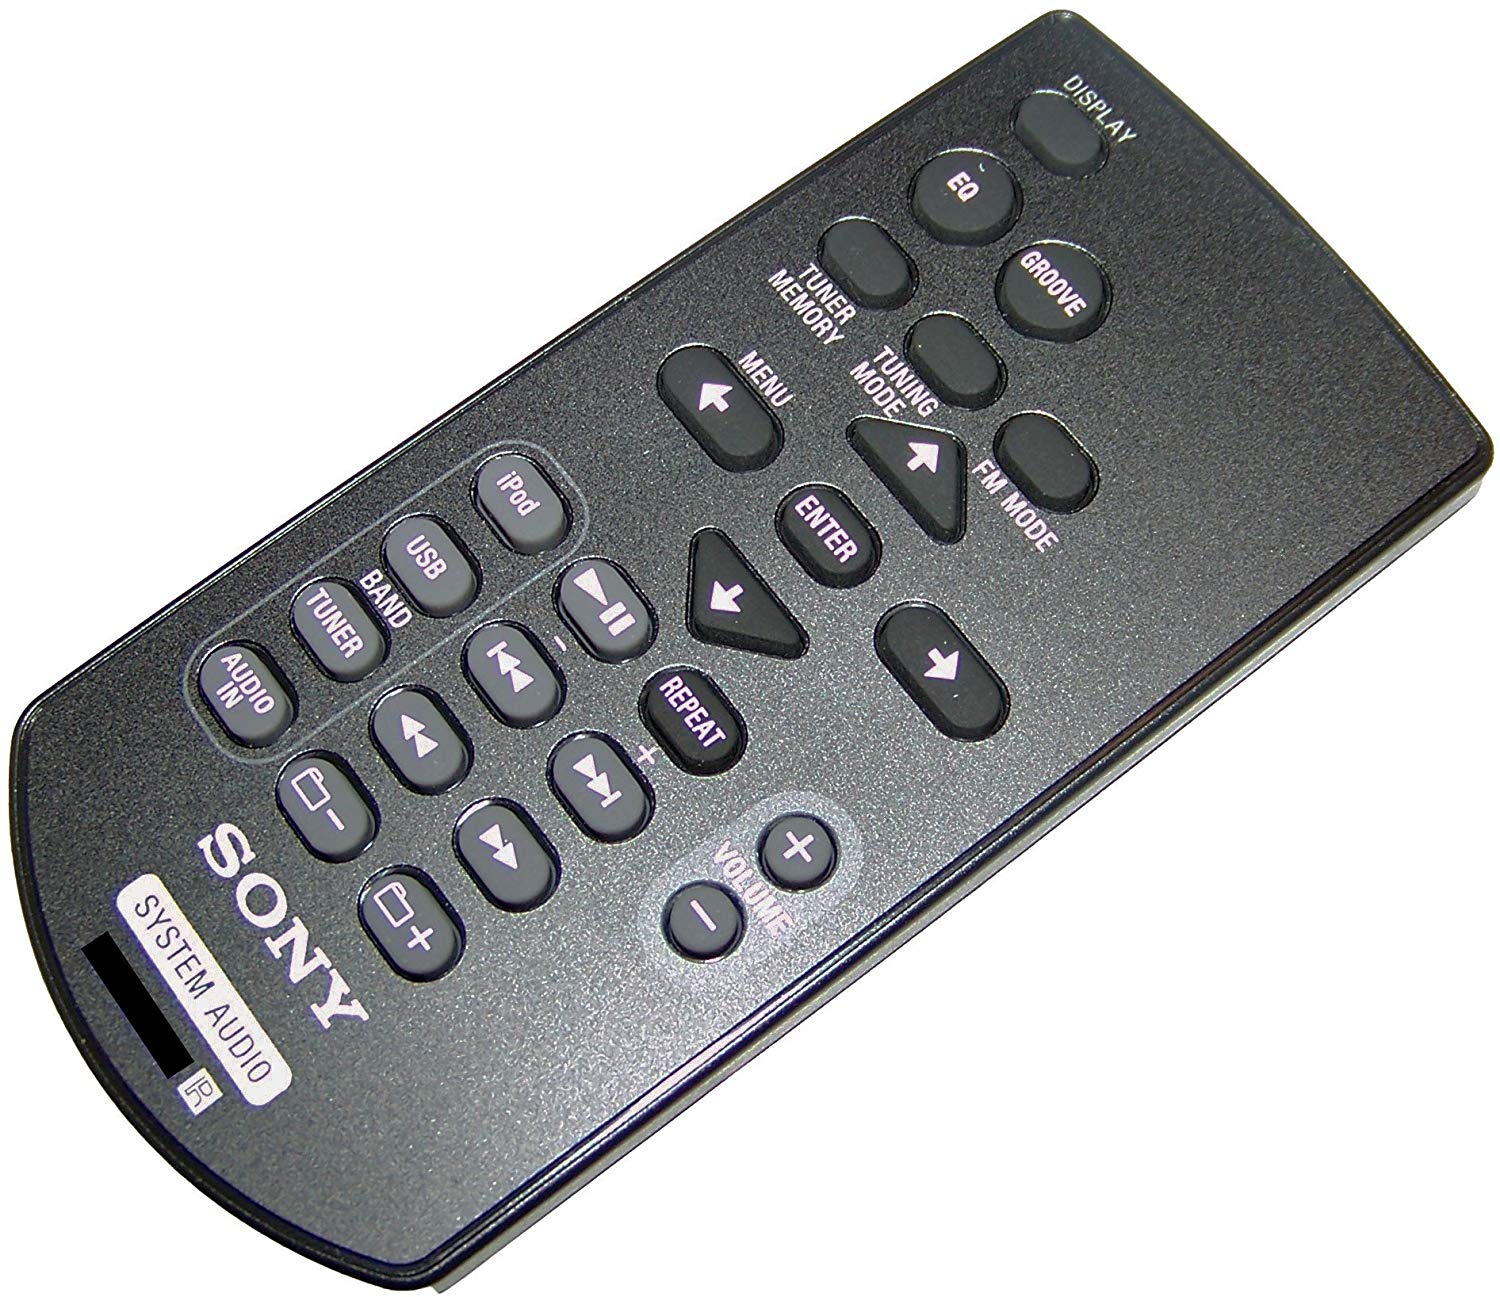 Sony Control Remoto original para modelos fstgtk1i, fst-gtk1i, hcdgtk1i, hcd-gtk1i, rdhgtk1i, rdh-gtk1i